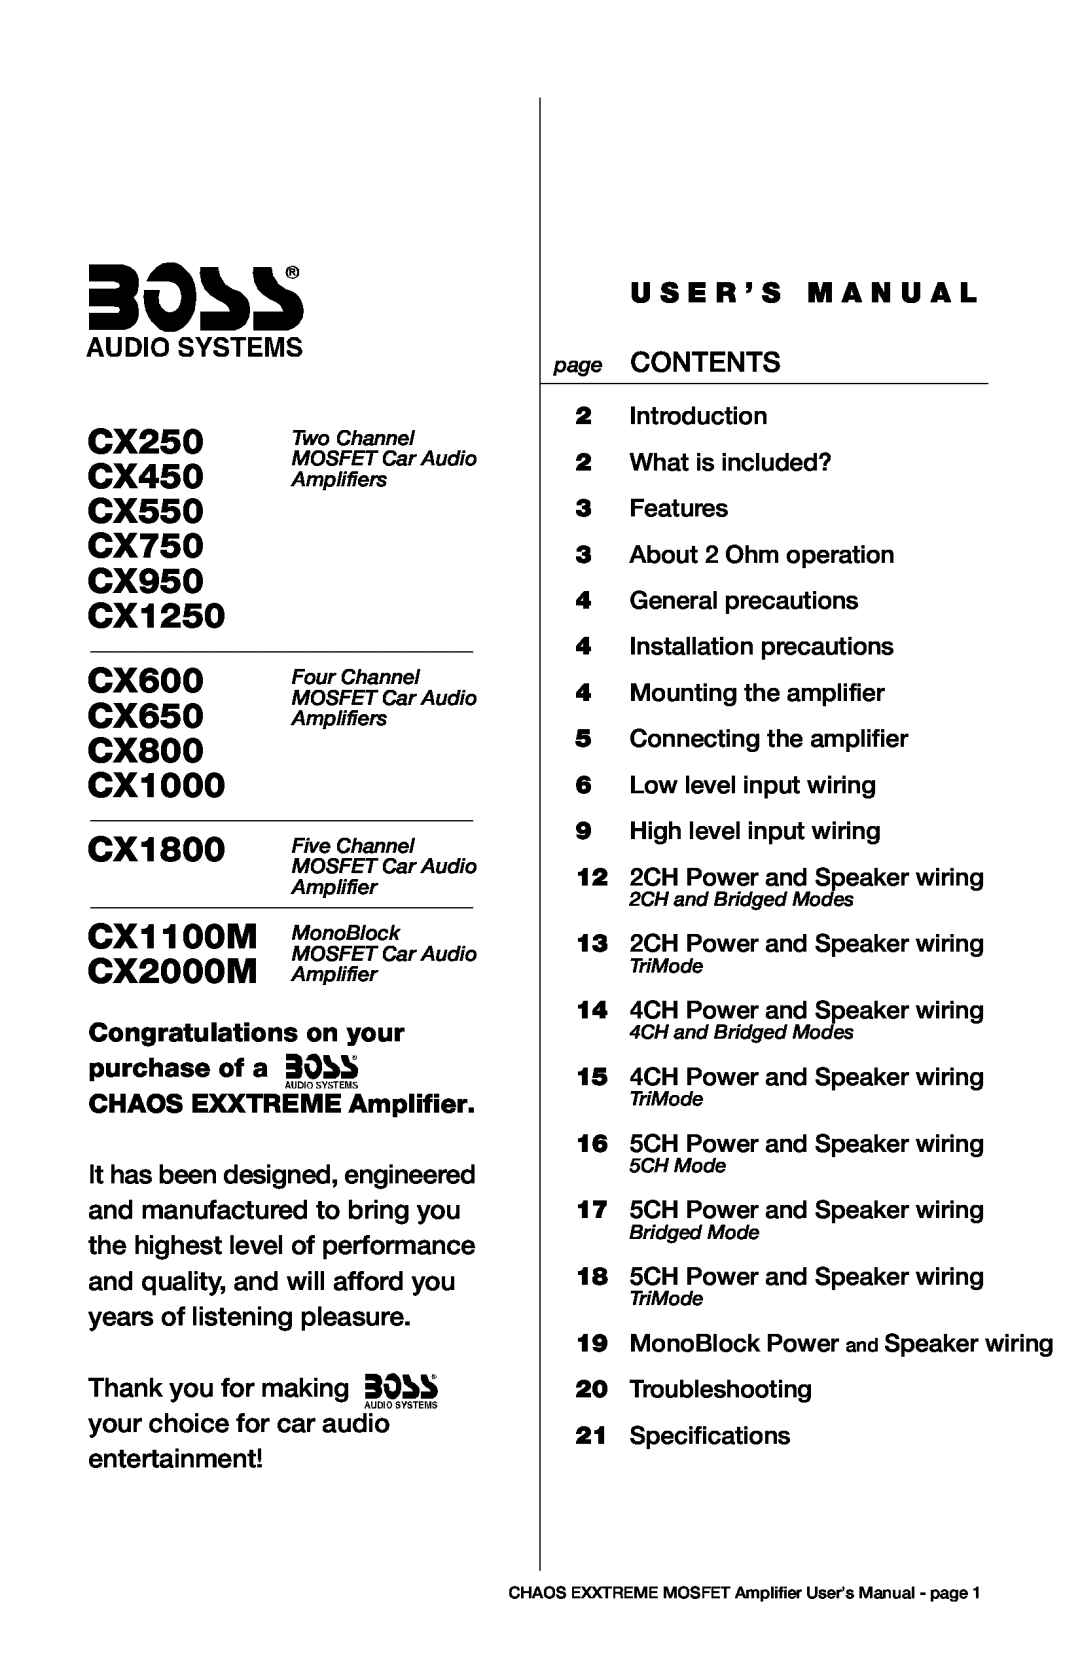 Boss Audio Systems CX250 user manual CX450, CX550, CX750, CX950, CX1250, CX600, CX650, CX800, CX1000, CX1800, CX1100M 